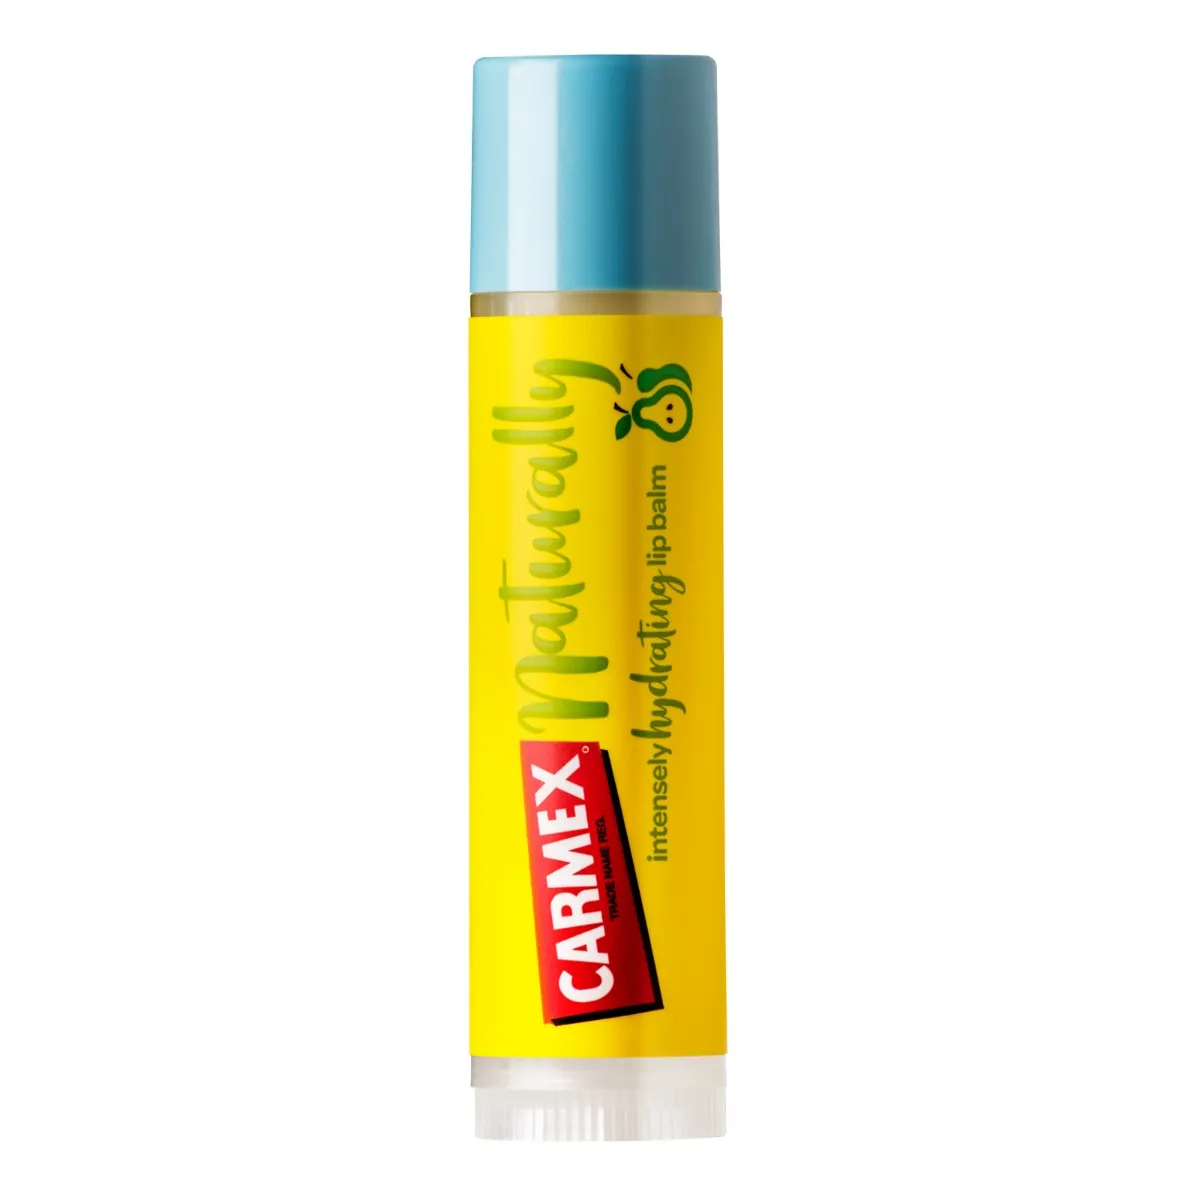 Carmex Naturally intensywnie nawilżający balsam do ust w sztyfcie Pear, 4,25 g